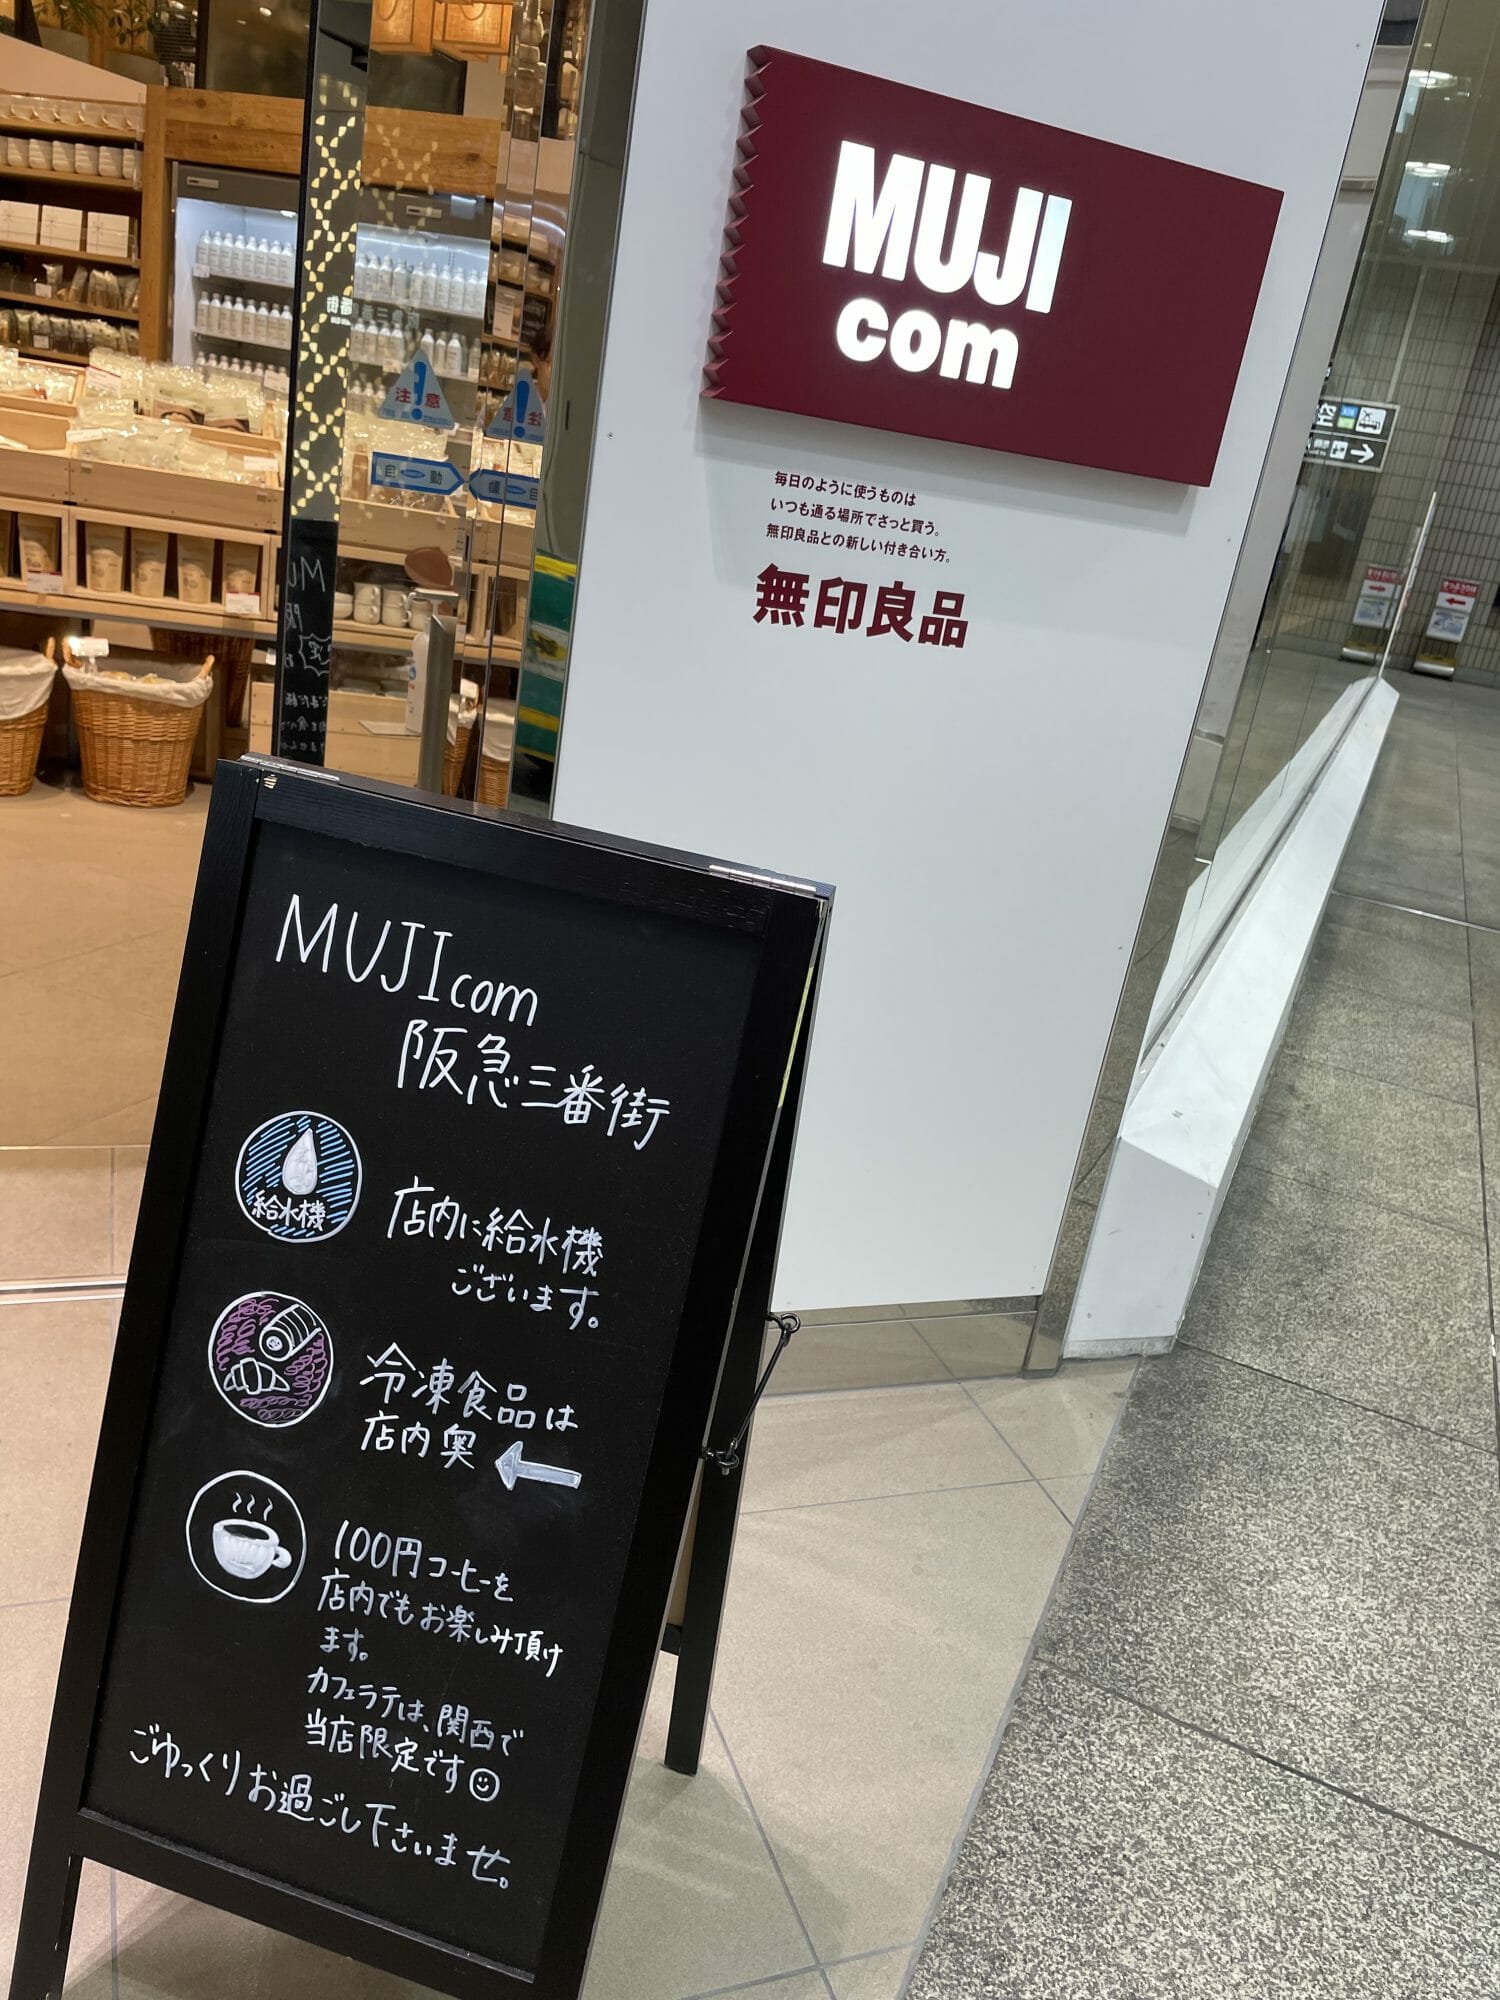 [ショート]新阪急ホテル前から伊丹空港、関空へのリムジンバスに乗る時、お弁当が欲しい場合は、横のMUJIで調達できます[2022/09/20] ID40234